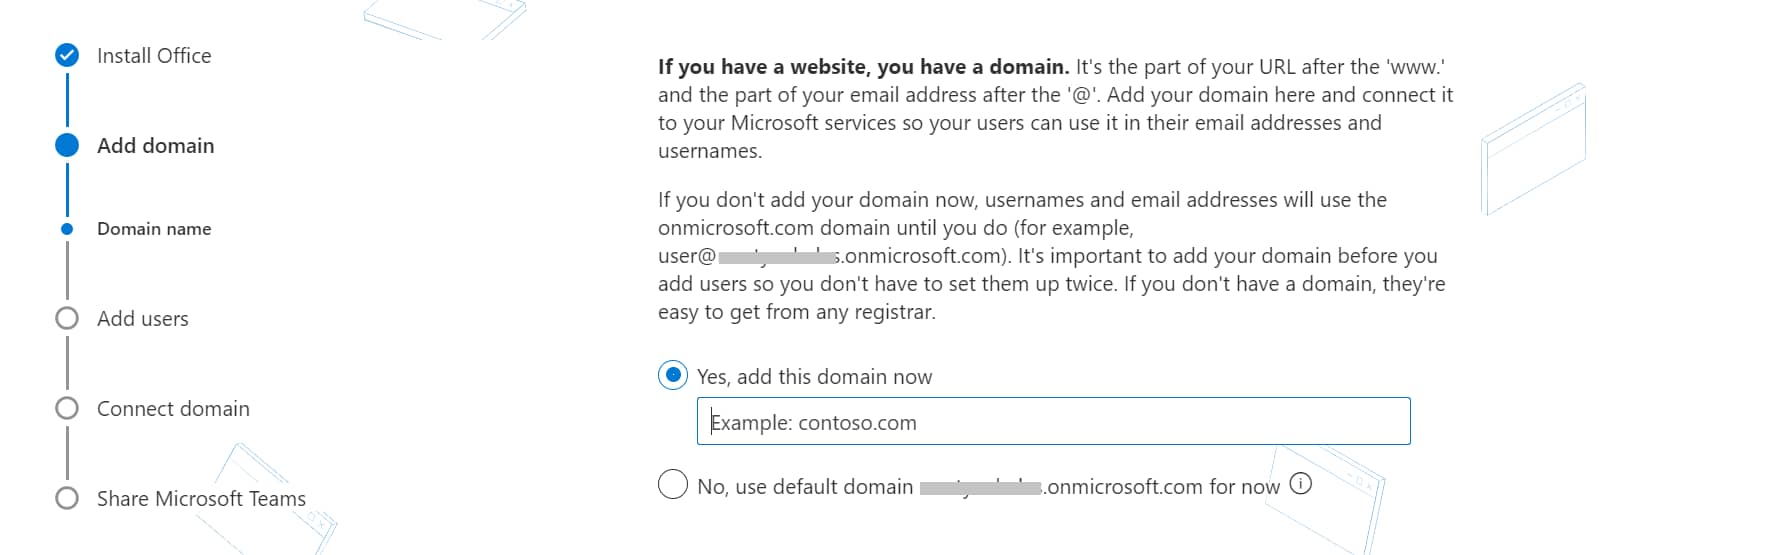 Настройте собственный адрес электронной почты, добавив домен в Office 365.